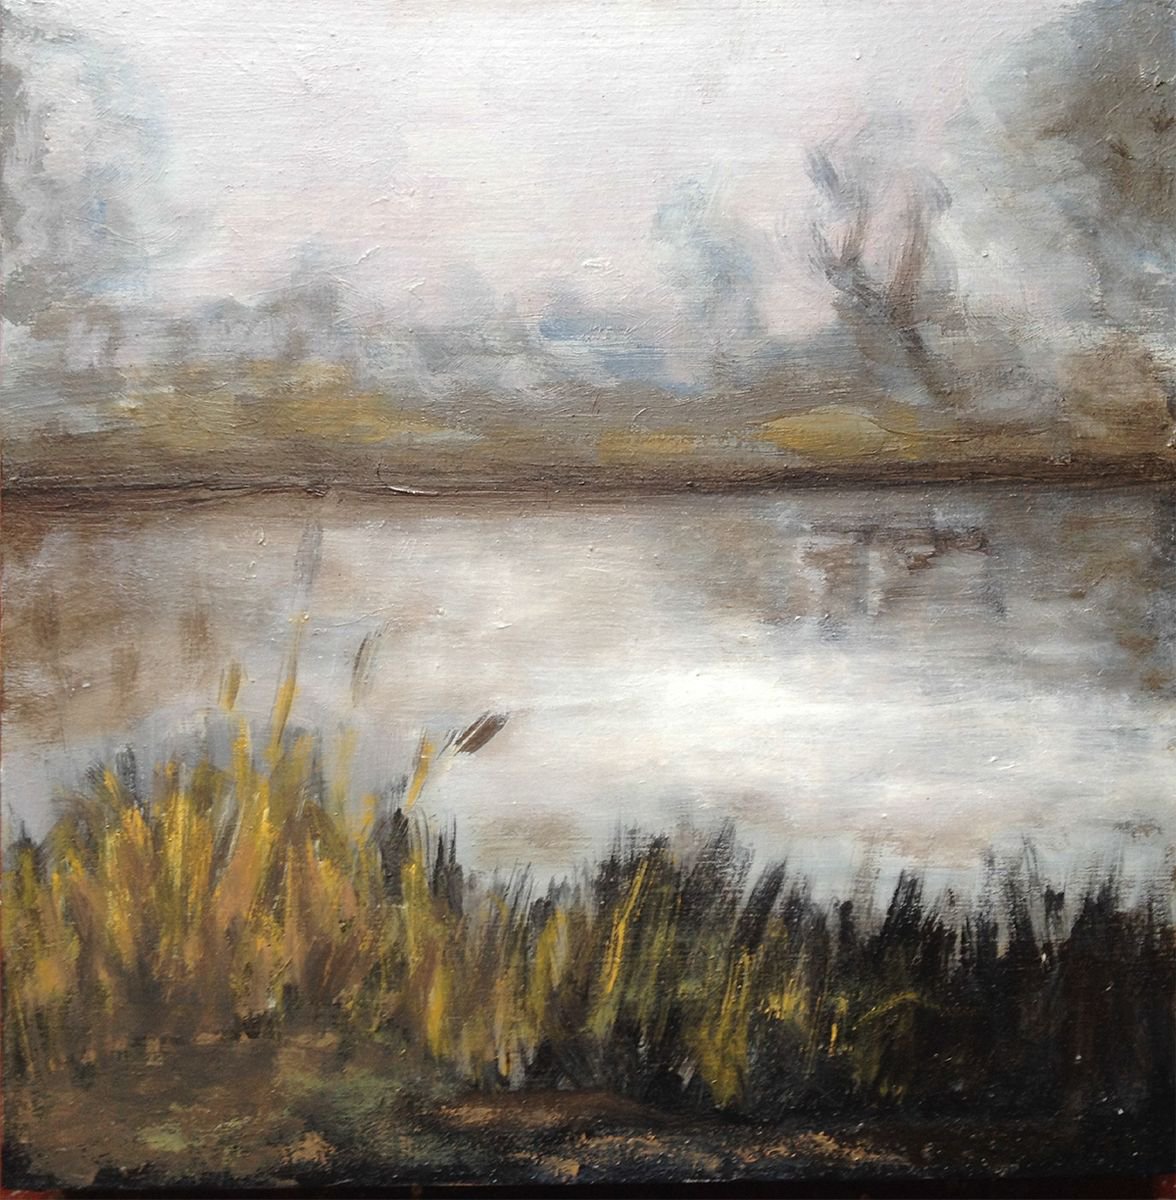 misty lake by Rene Goorman